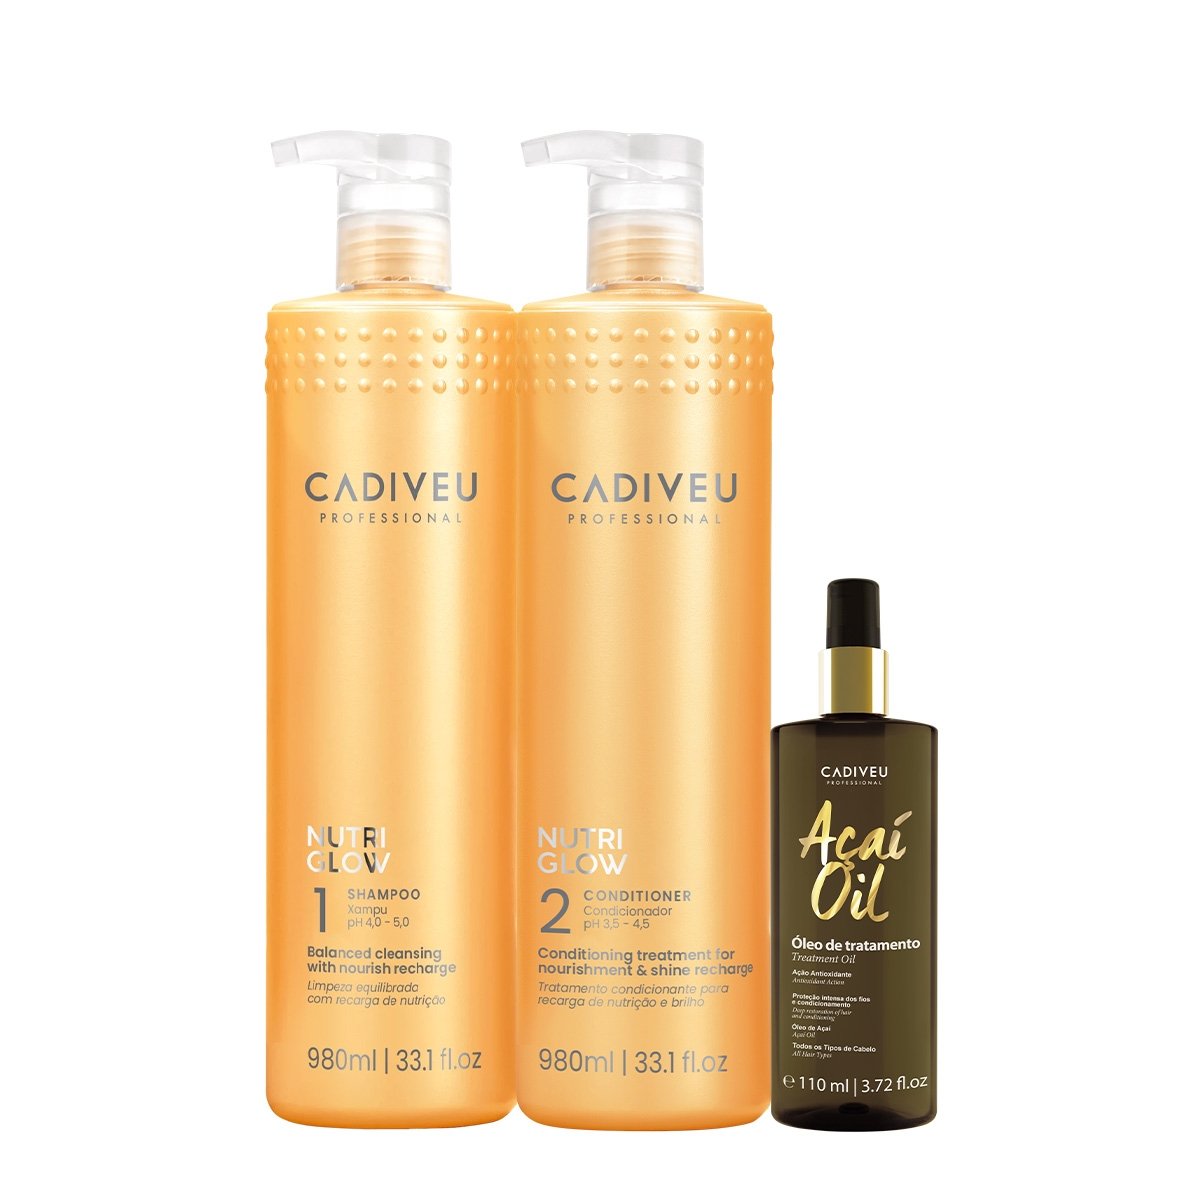 Kit Cadiveu Professional Nutri Glow Shampoo Condicionador G e Acai Oil 110 (3 produtos)